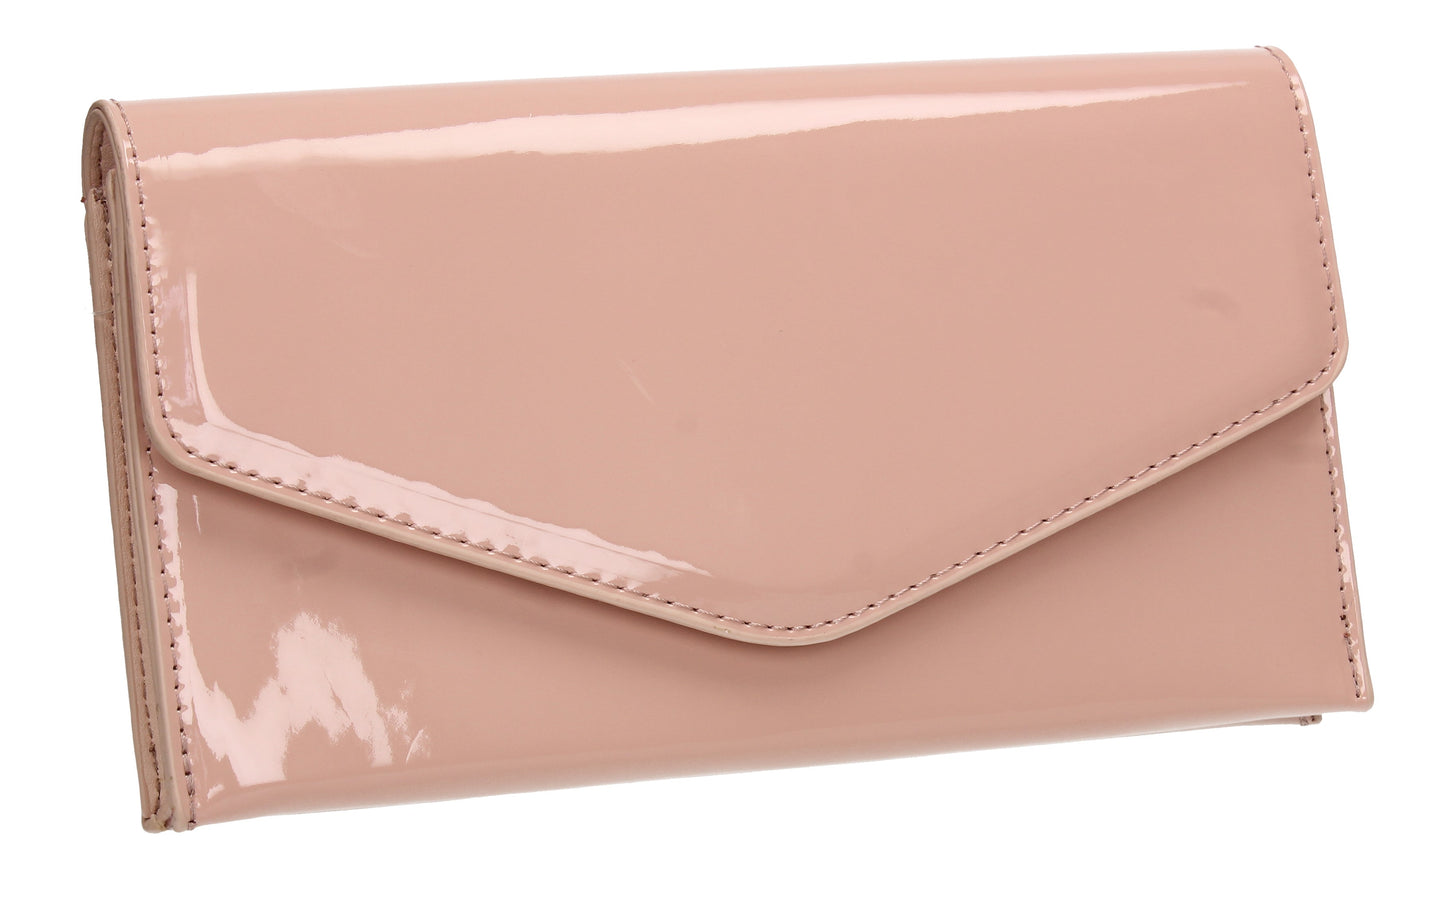 Evie Plain Patent Envelope Clutch Bag Pink